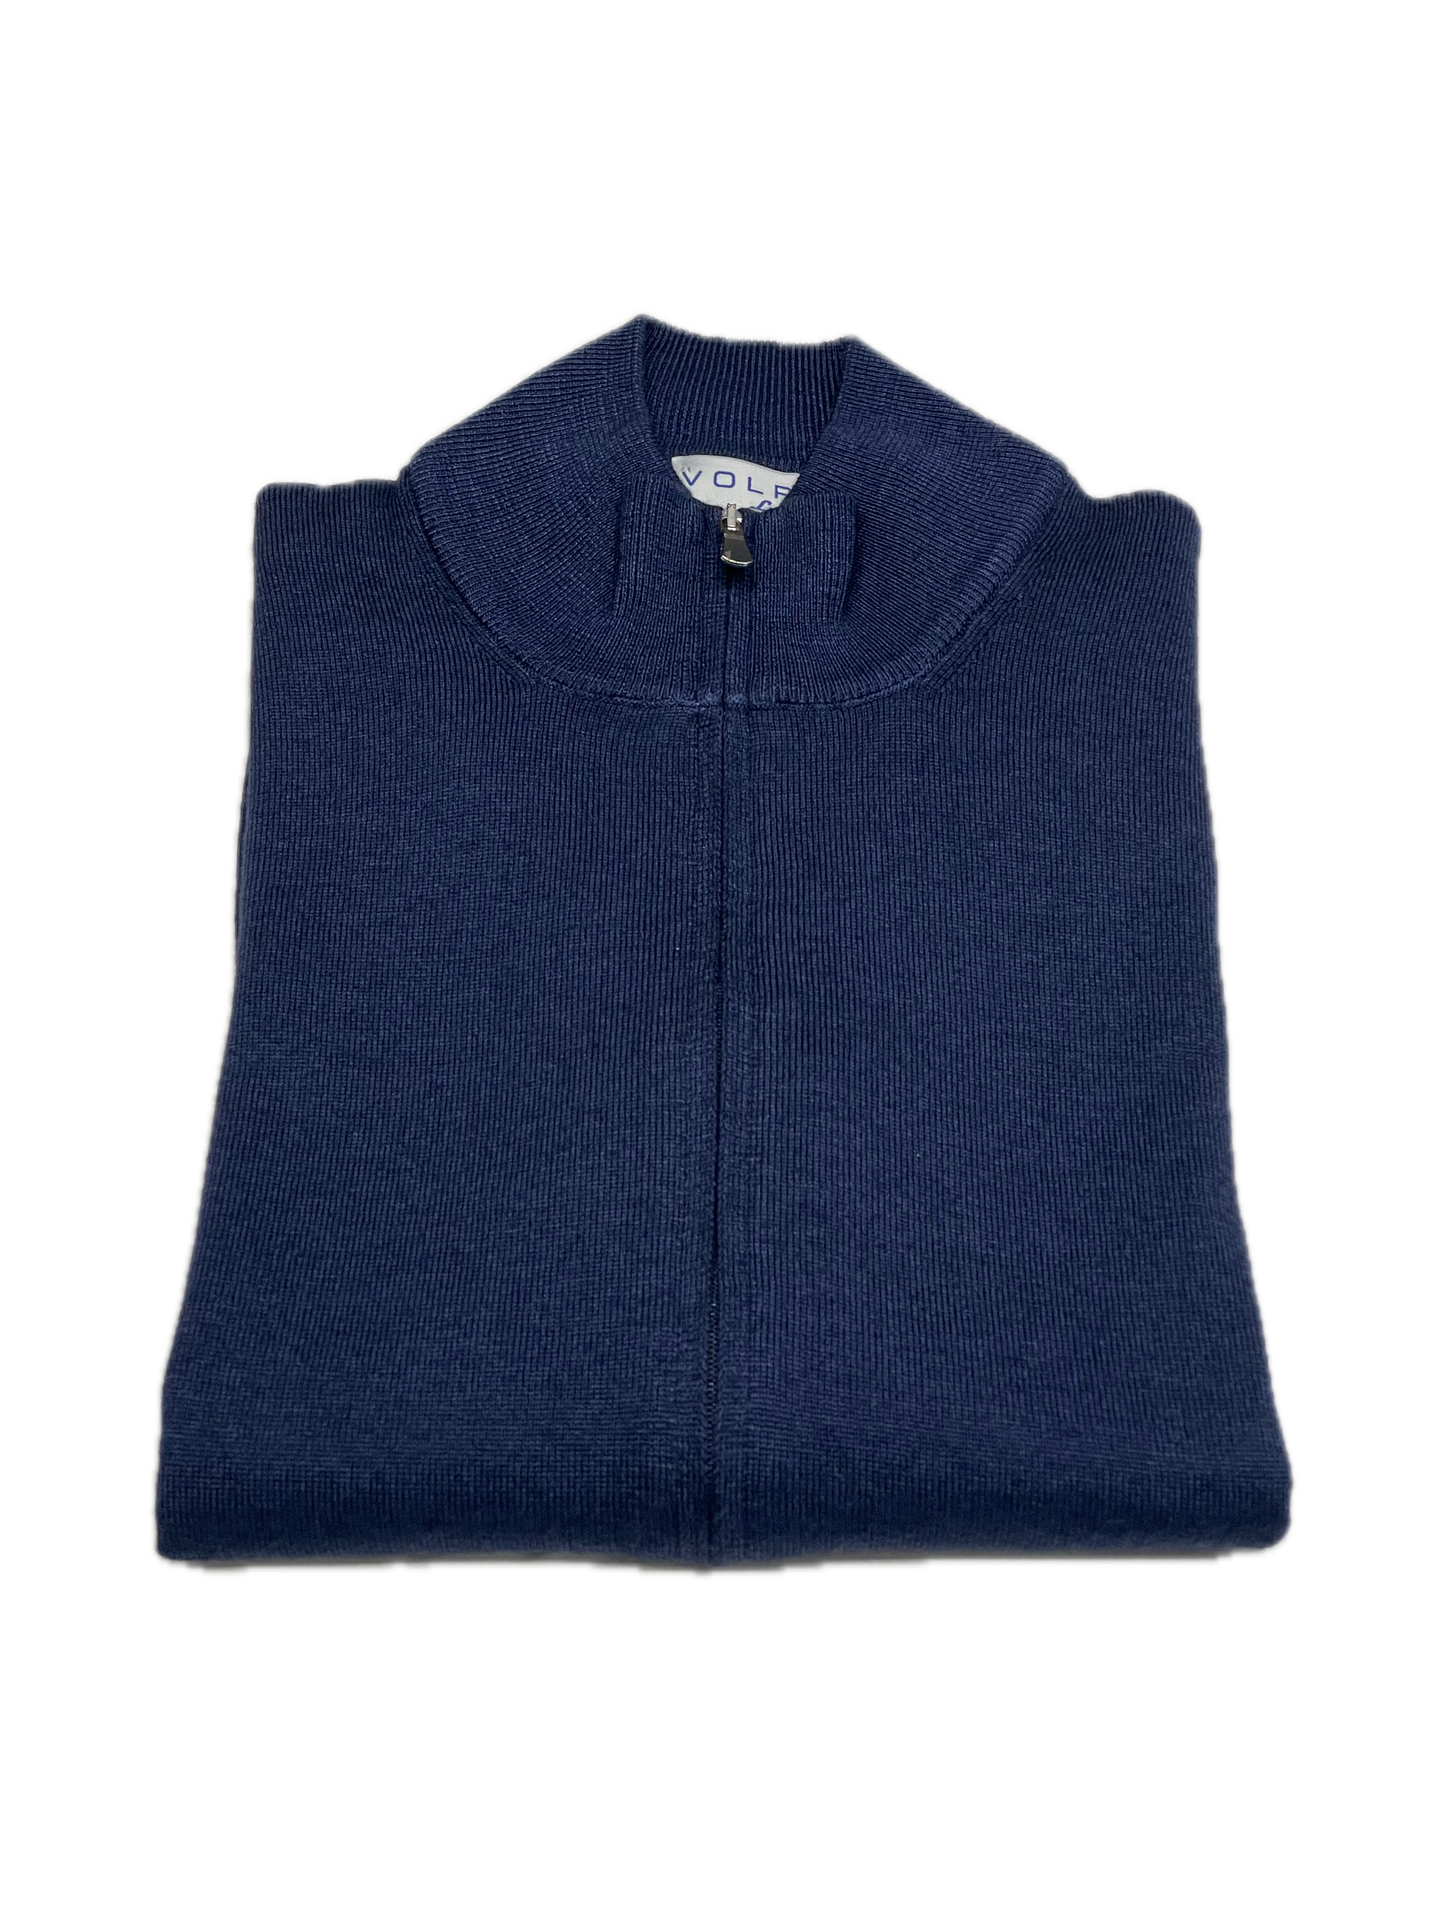 Full Zip sweater zip in navy vintage merino wool